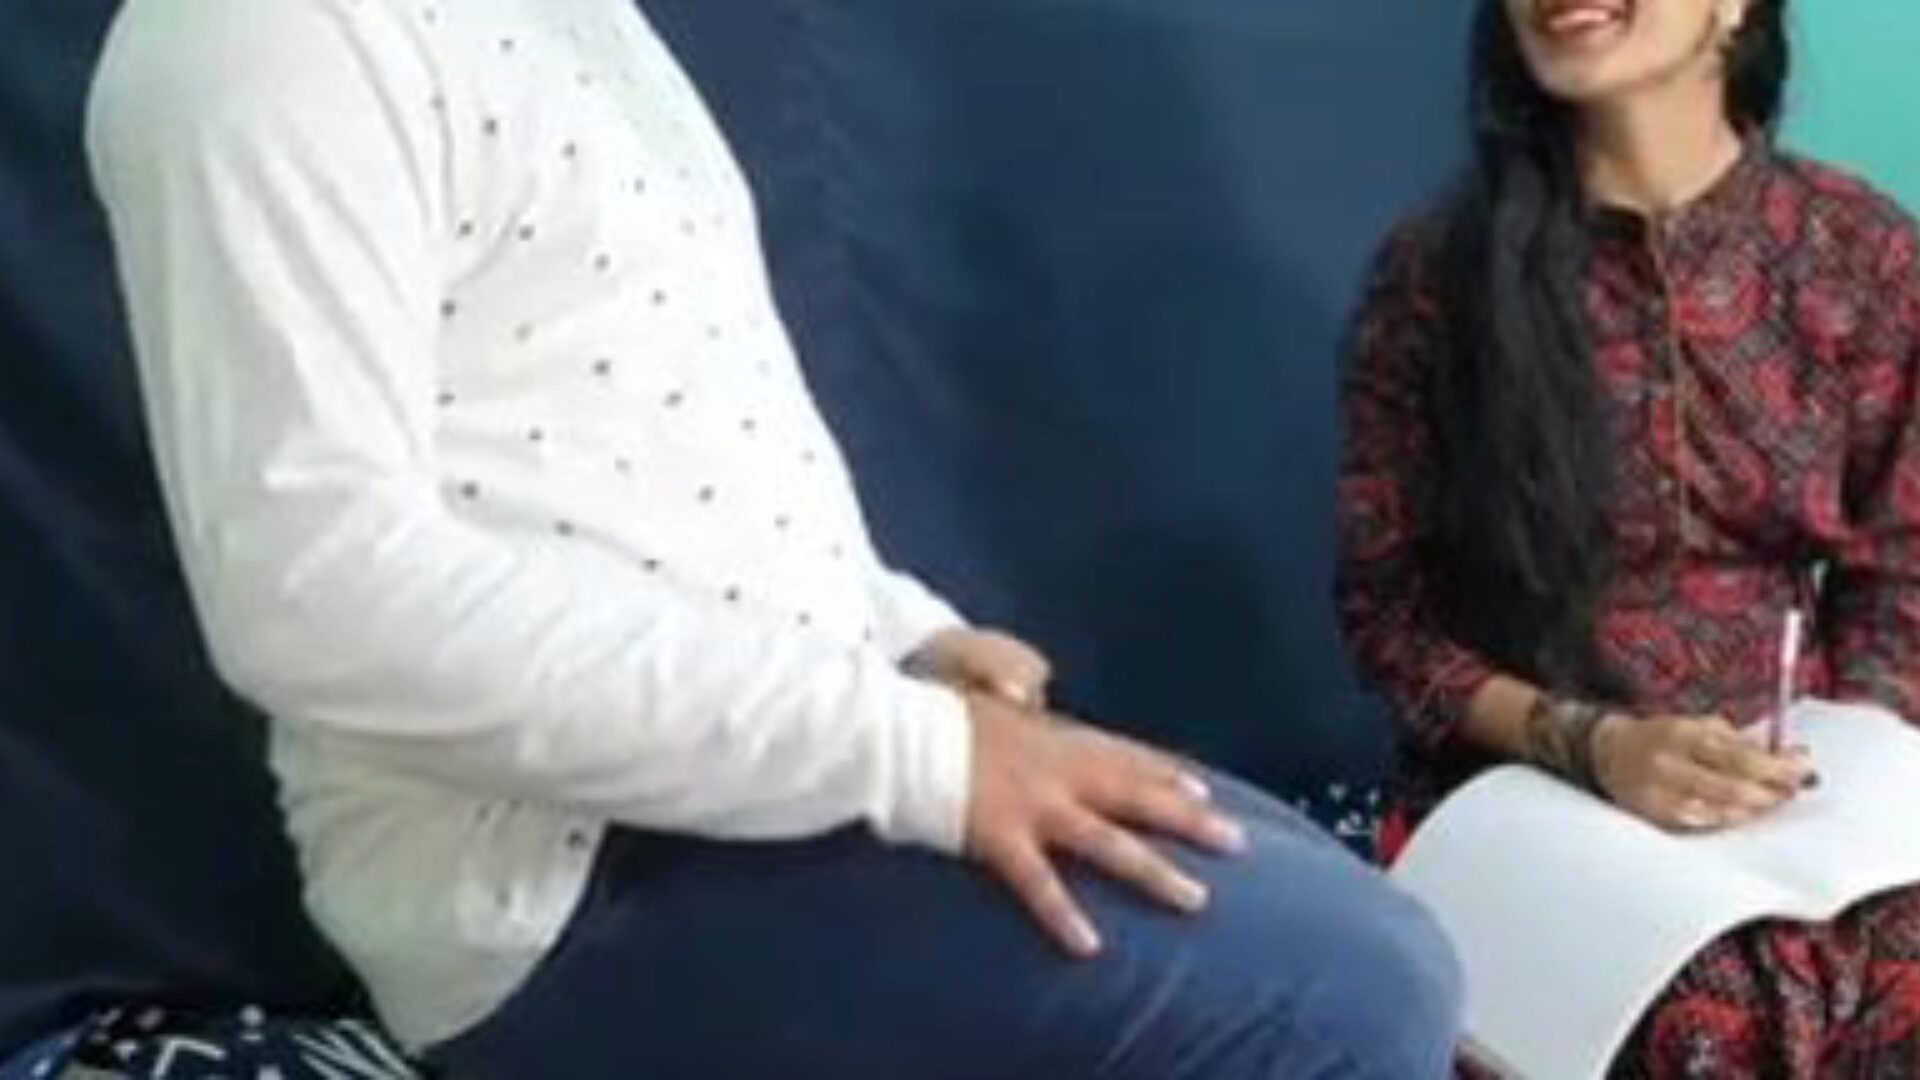 δάσκαλος πεισμένος σκατά για μαθητές, δωρεάν πορνό 1d: ρολόι xhamster δάσκαλος πεισμένος σκατά για μαθητές κλιπ στο xhamster, η τεράστια ιστοσελίδα του bang-out σωλήνα με τόνους δωρεάν ινδούς δασκάλους & τριχωτά βίντεο πορνό